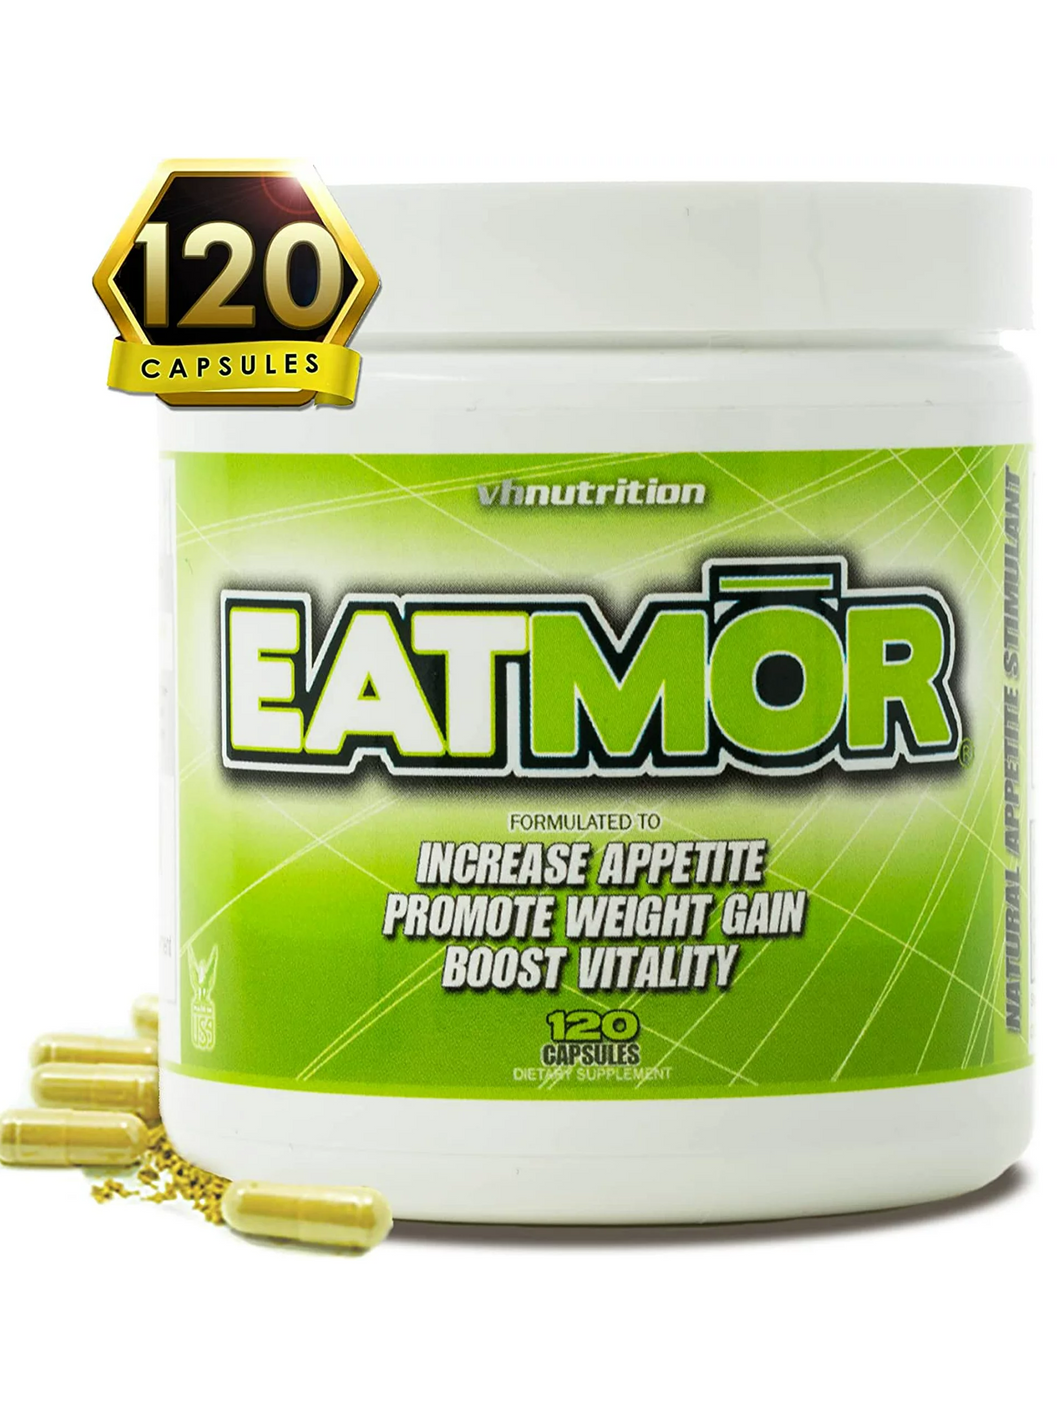 Estimulador de apetito EATMOR. Para comer más, aumentar de peso, aumenta vitalidad, mejora digestión. 120 cápsulas